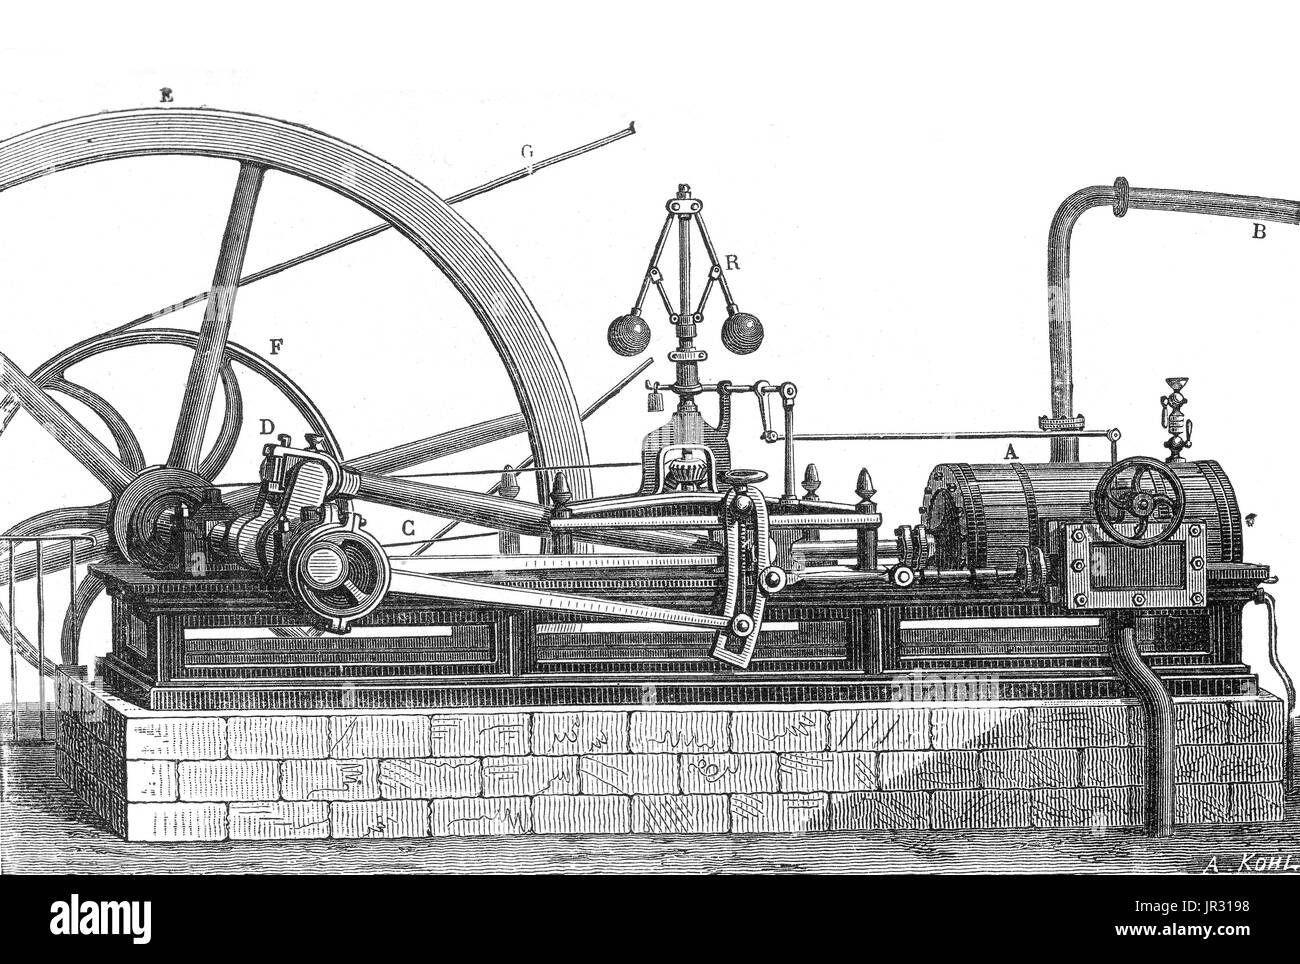 Asistir Encommium Mente El motor de vapor sin condensador, cilindro horizontal. La primera  locomotora de vapor era rudimentario grabada la aeolipile descrito por  Heron de Alejandría en el siglo I A.C. Comenzando en el siglo